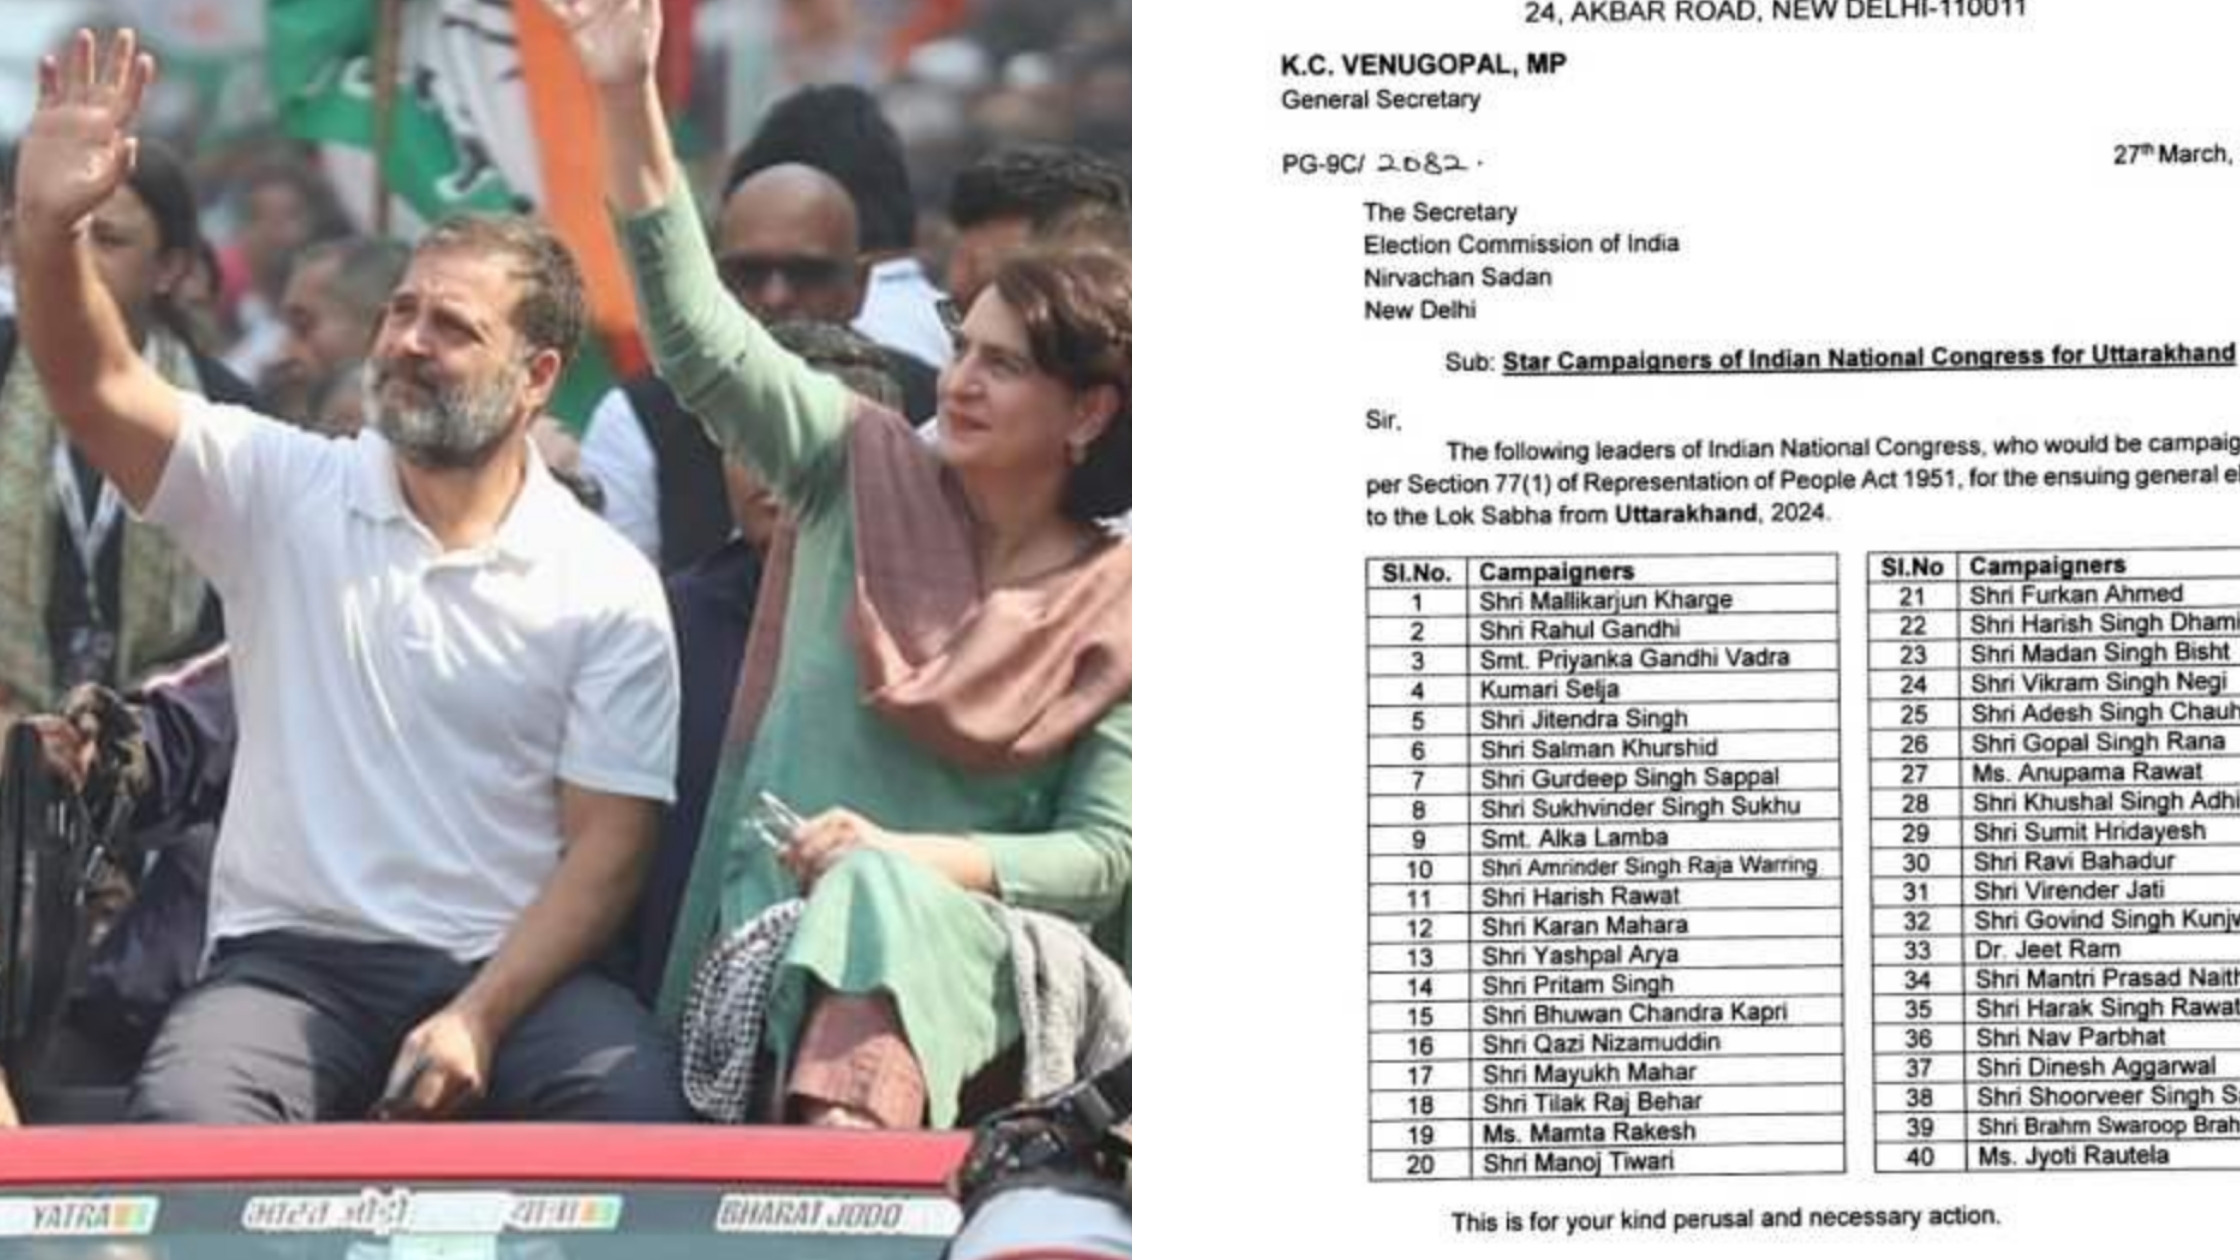 उत्तराखंड_कांग्रेस ने जारी की स्टार कैंपेनर्स की लिस्ट, यह 40 नेता गरमाएंगे चुनावी माहौल